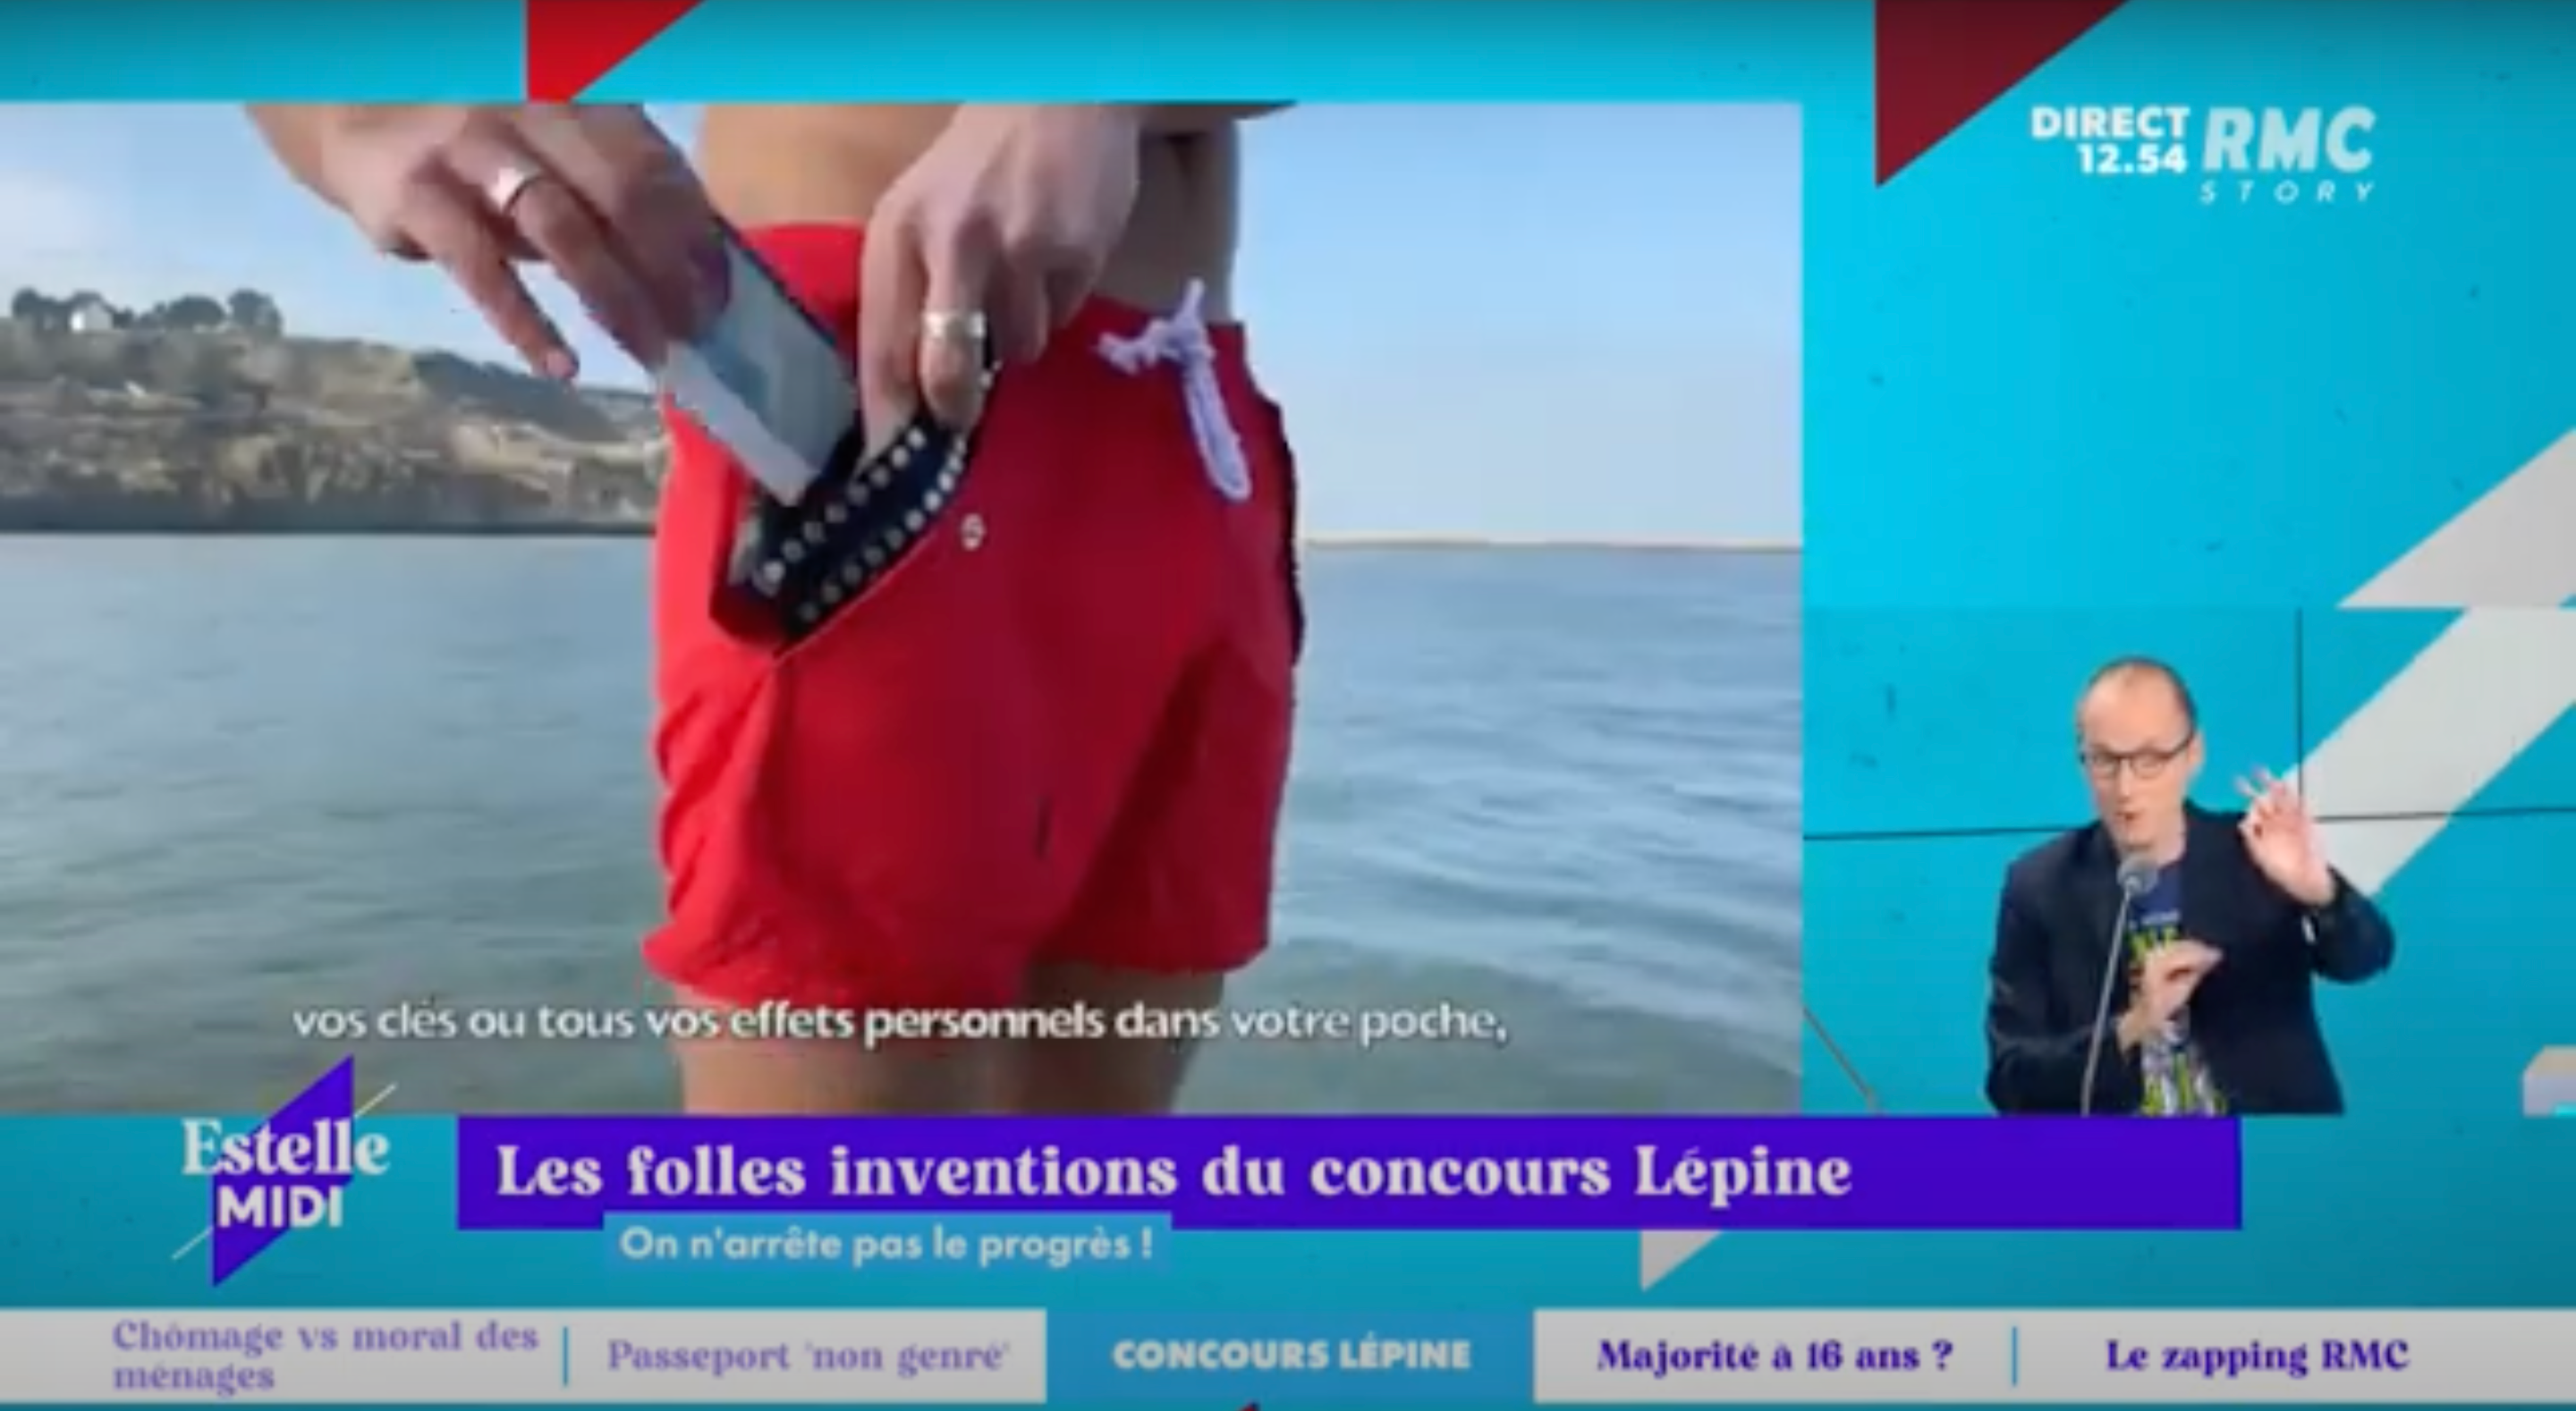 Carica il video: Estelle Midi sur RMC